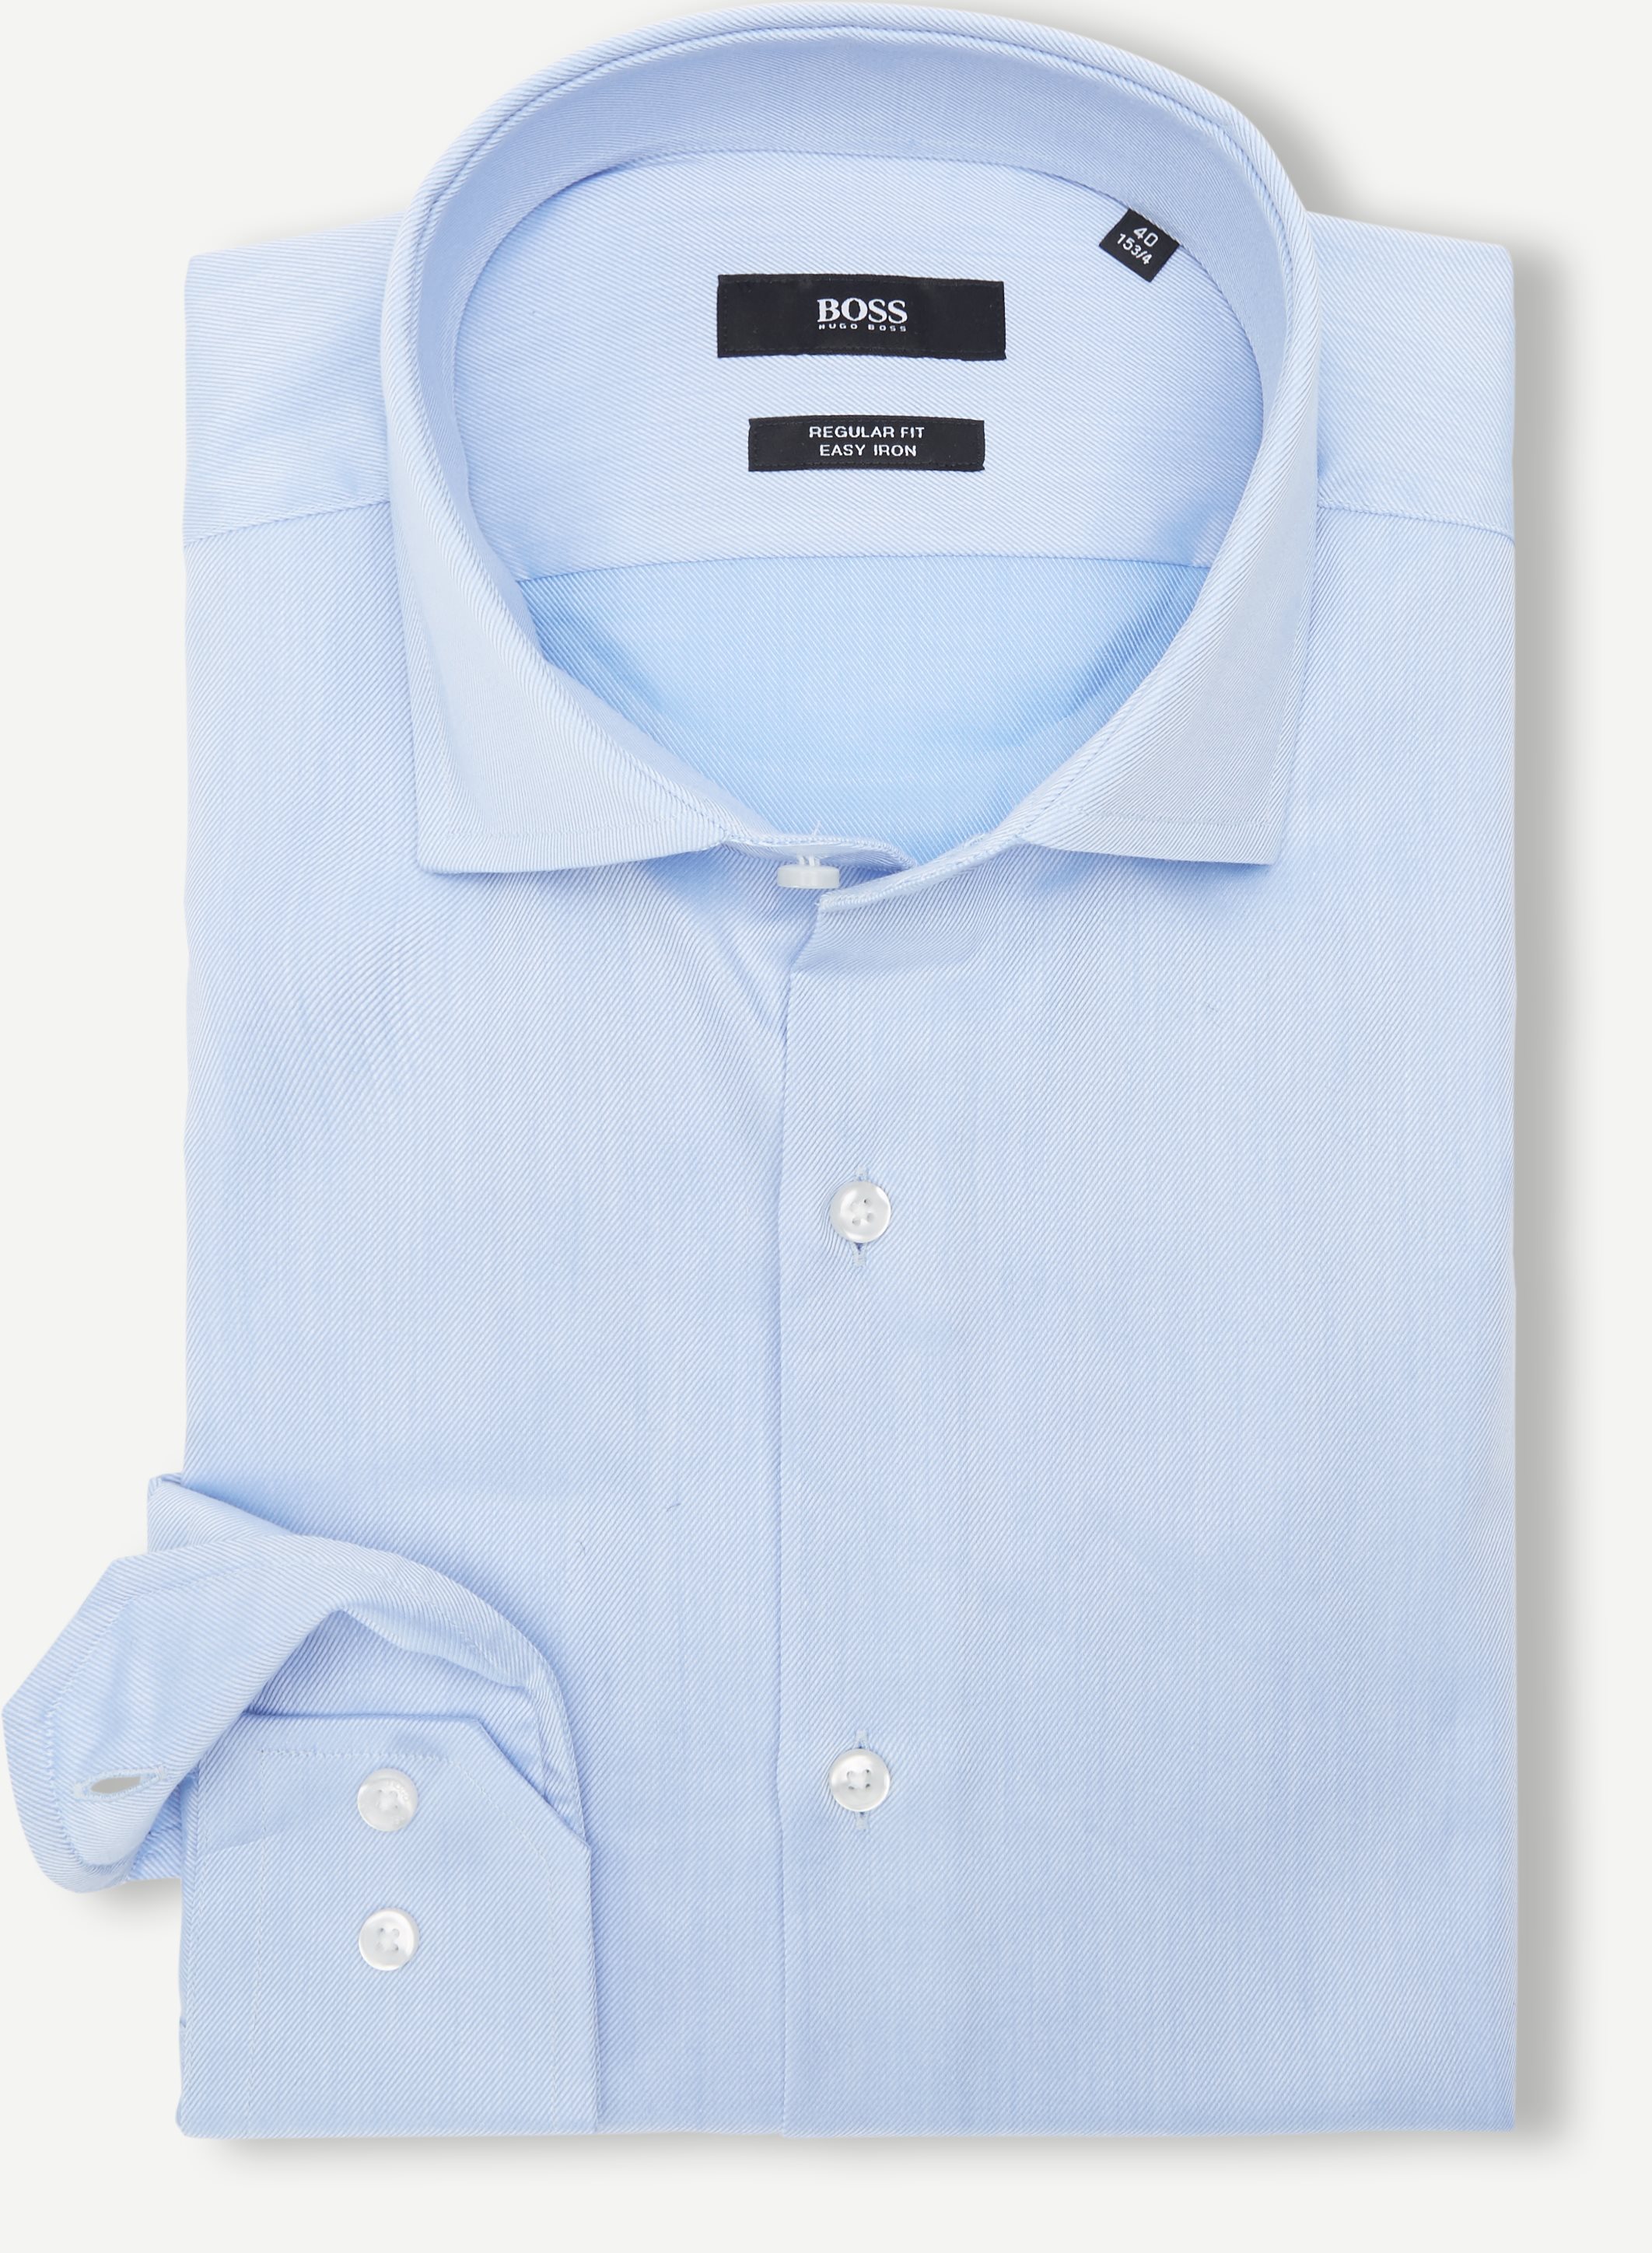 Gordon-Shirt - Hemden - Regular fit - Blau